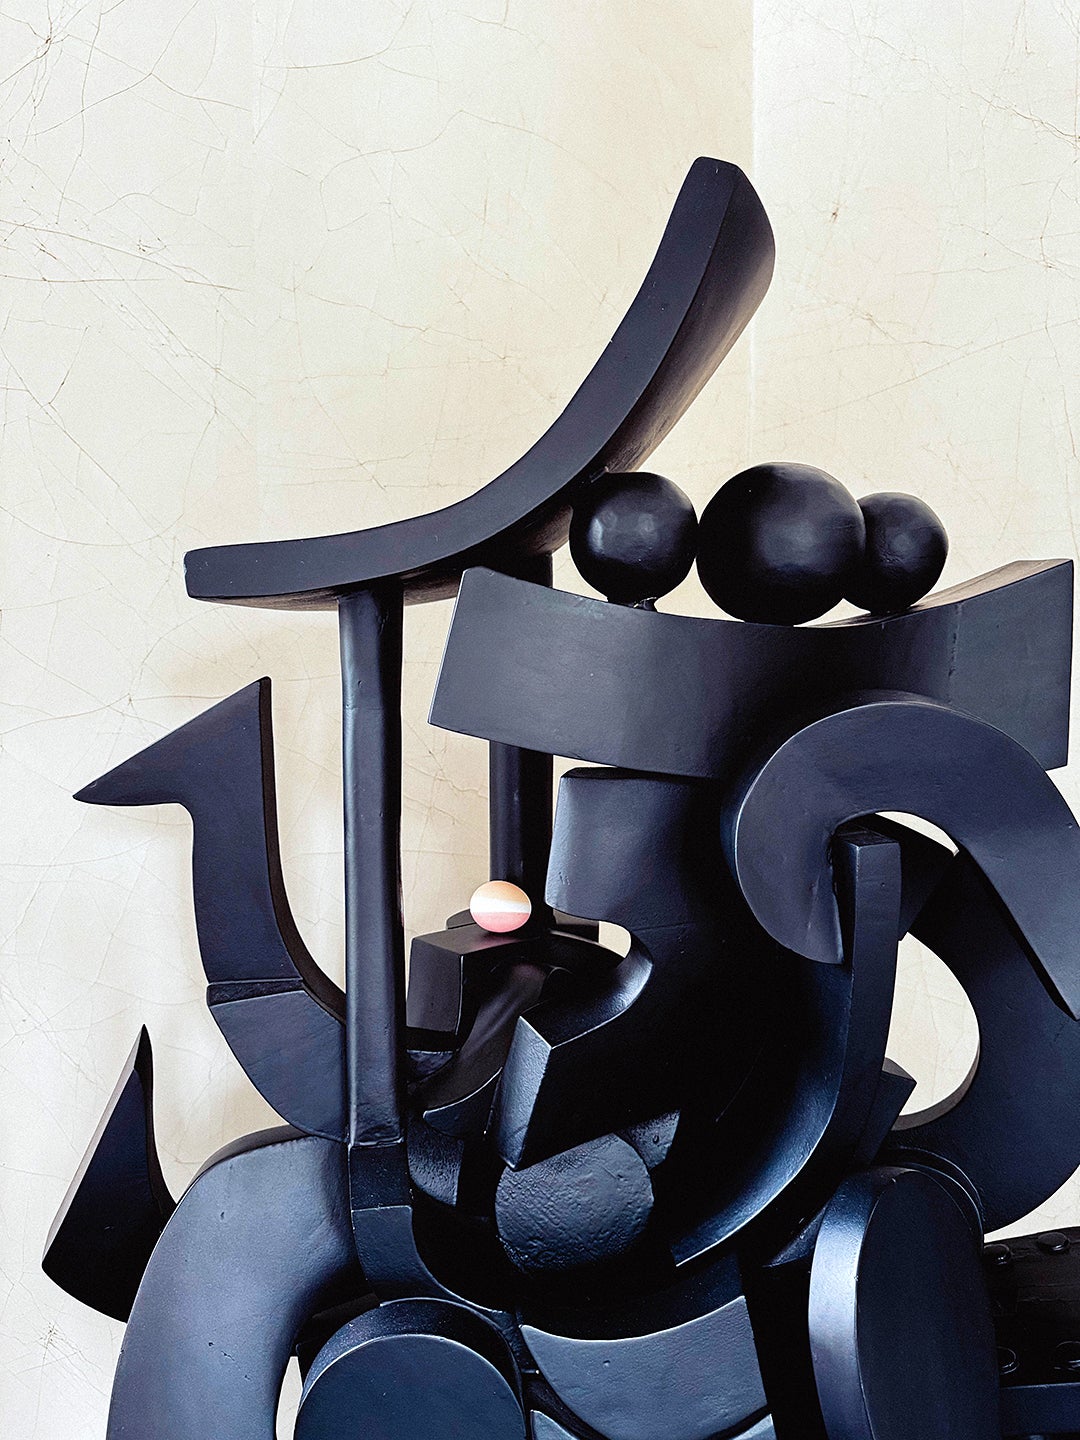 easter egg on a black sculpture